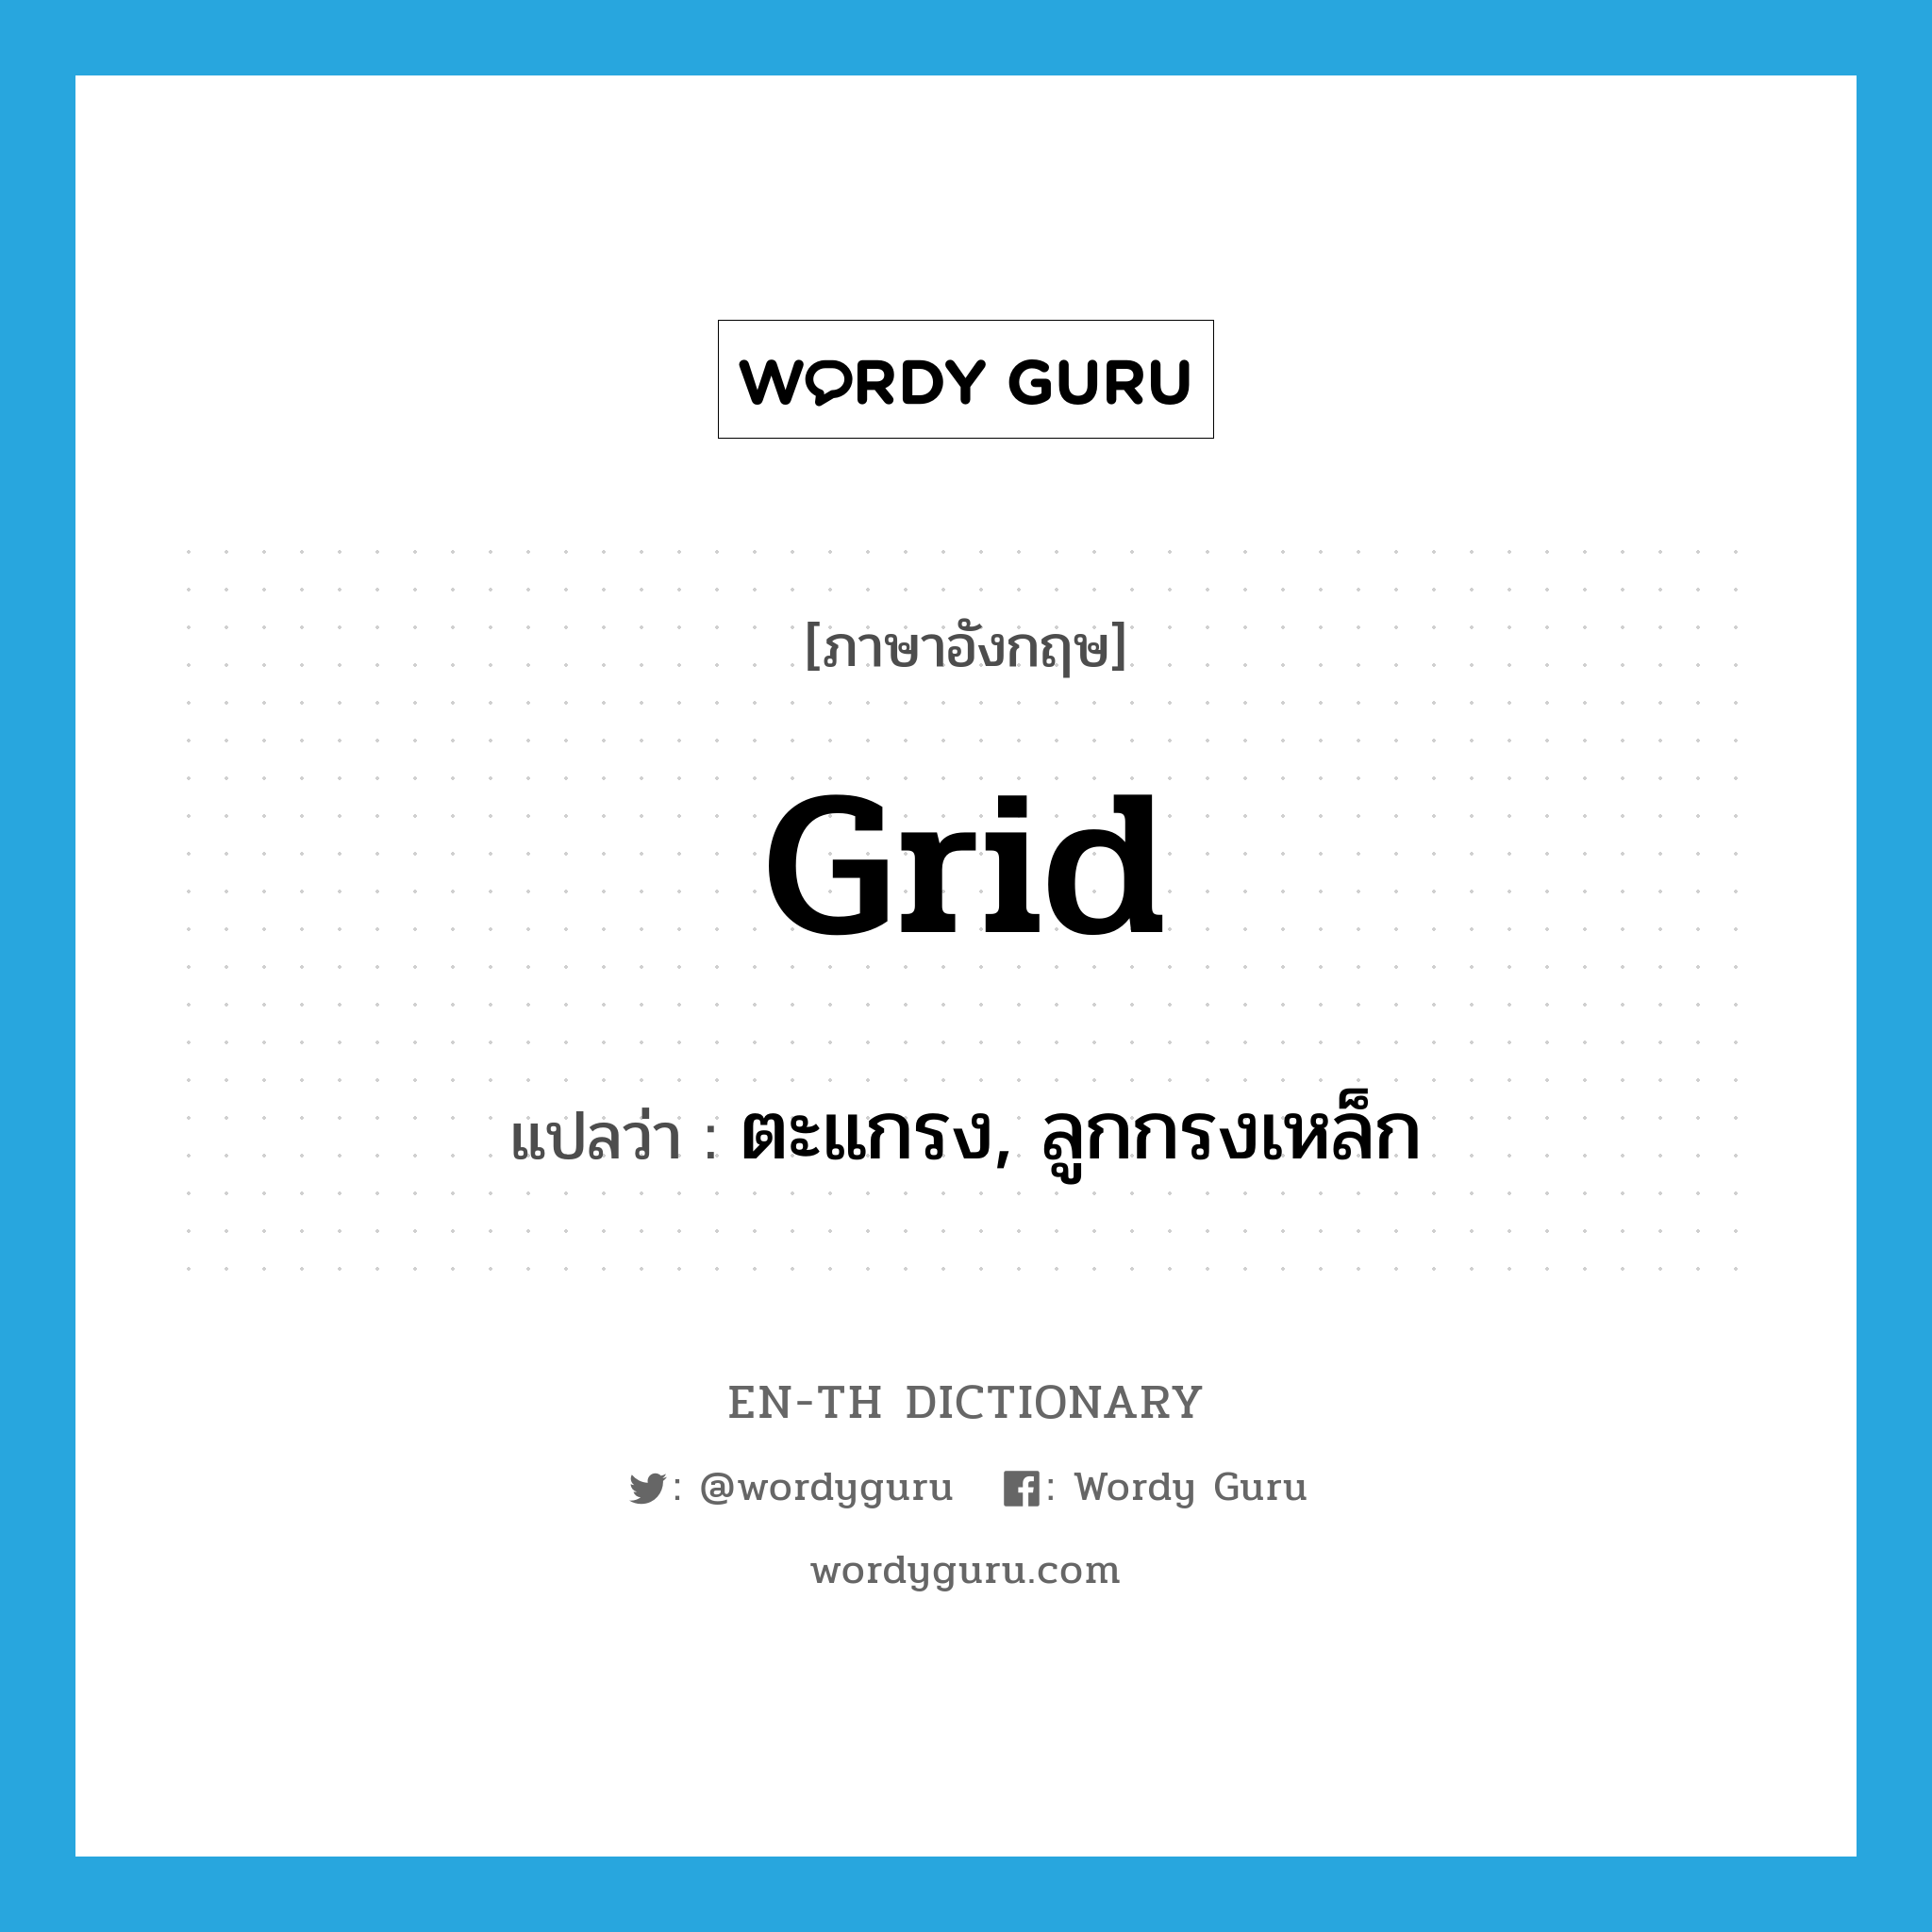 grid แปลว่า?, คำศัพท์ภาษาอังกฤษ grid แปลว่า ตะแกรง, ลูกกรงเหล็ก ประเภท N หมวด N